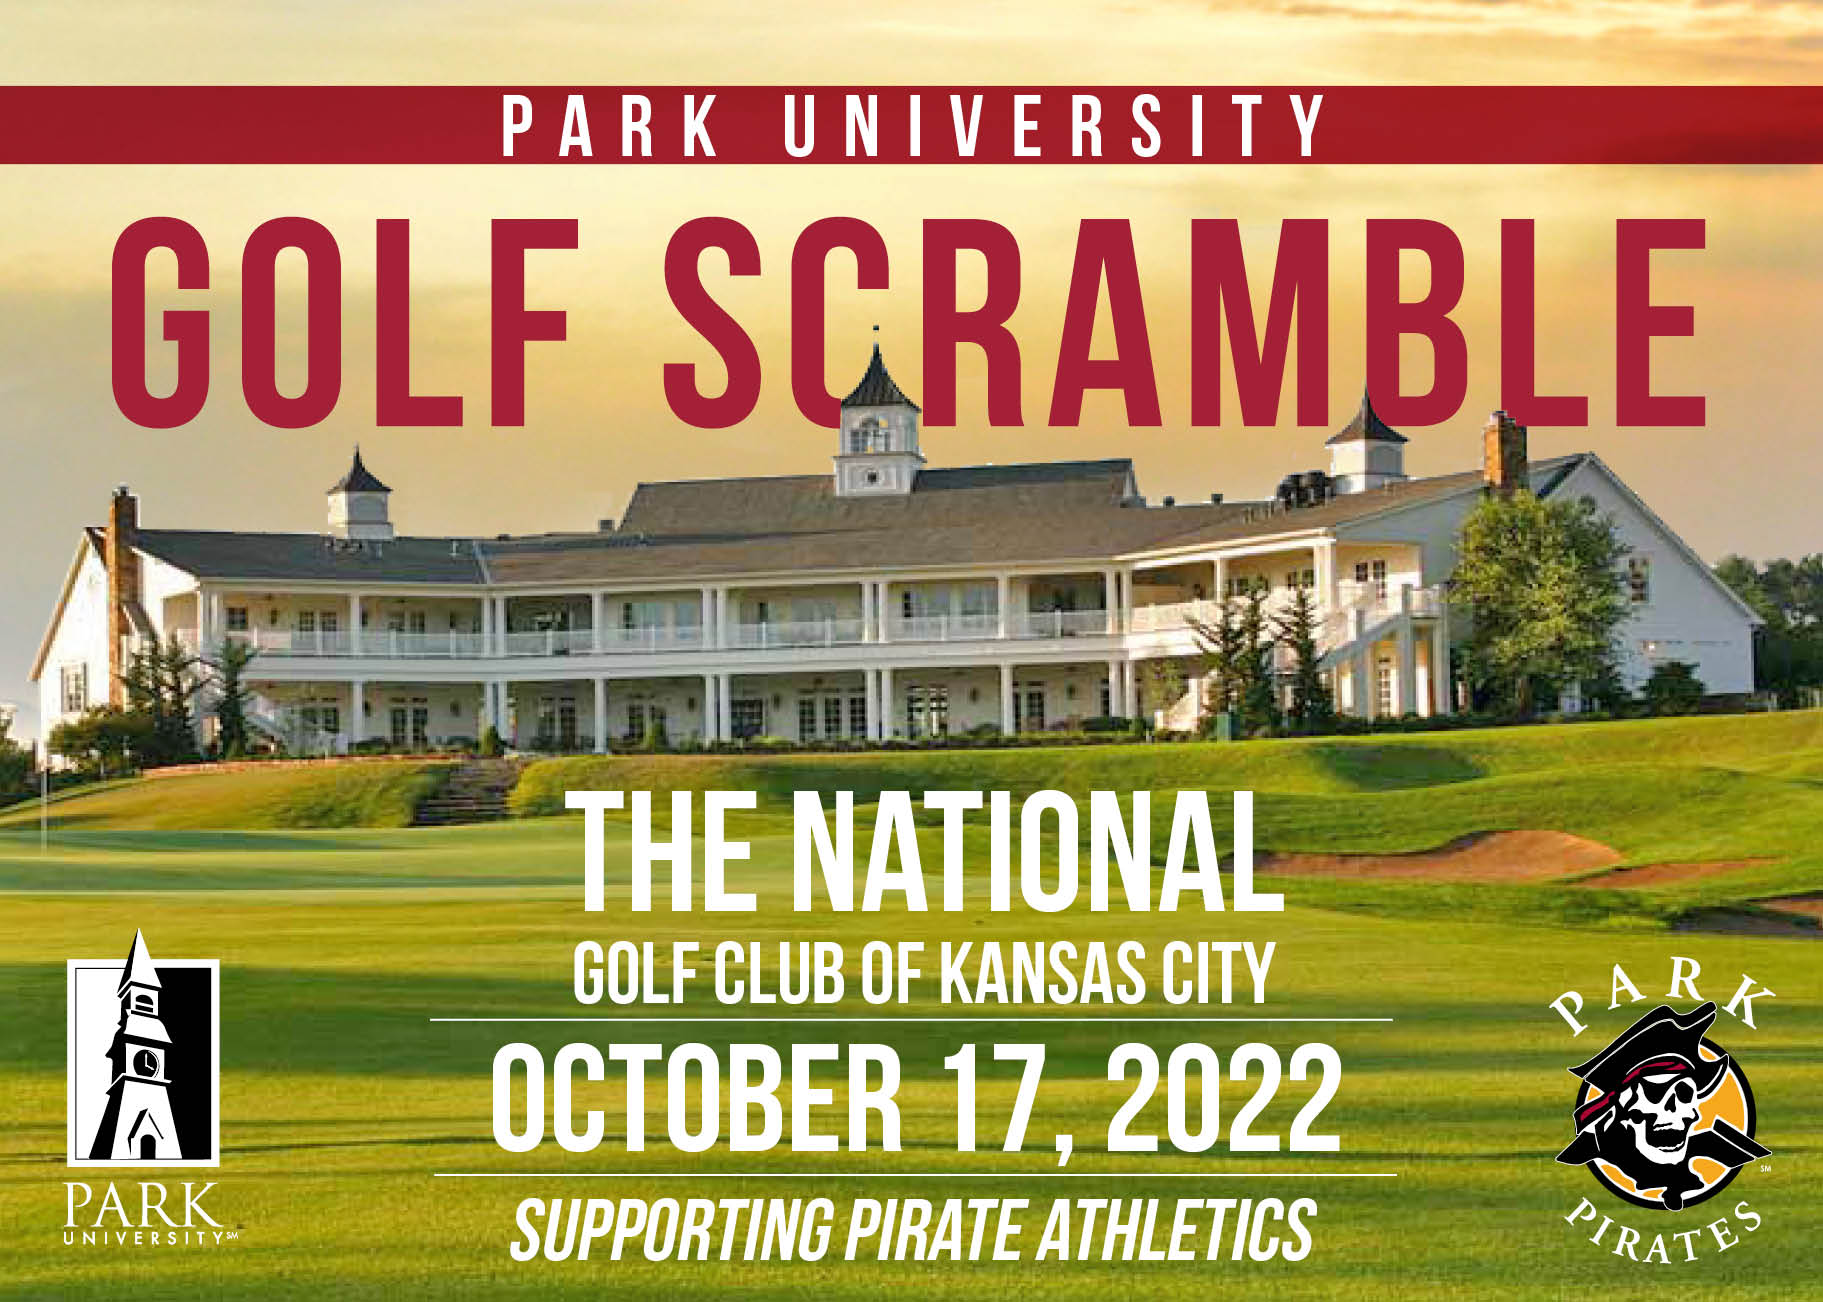 Golf Scramble October 17, 2022